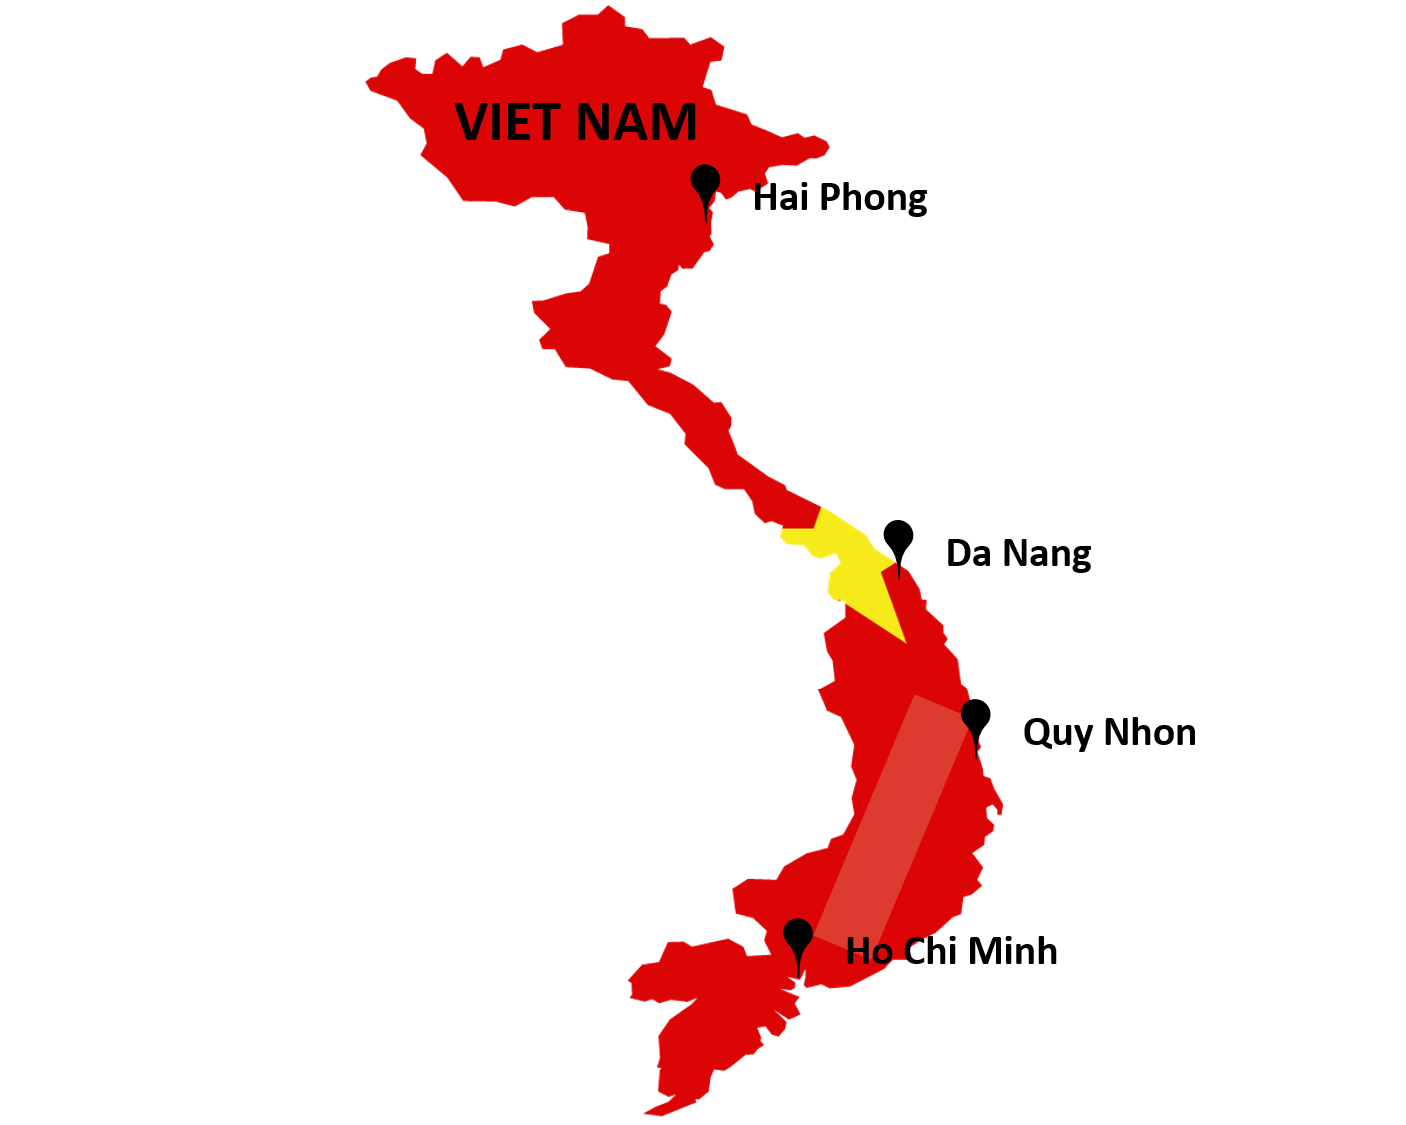 Vietnam sea ports list 